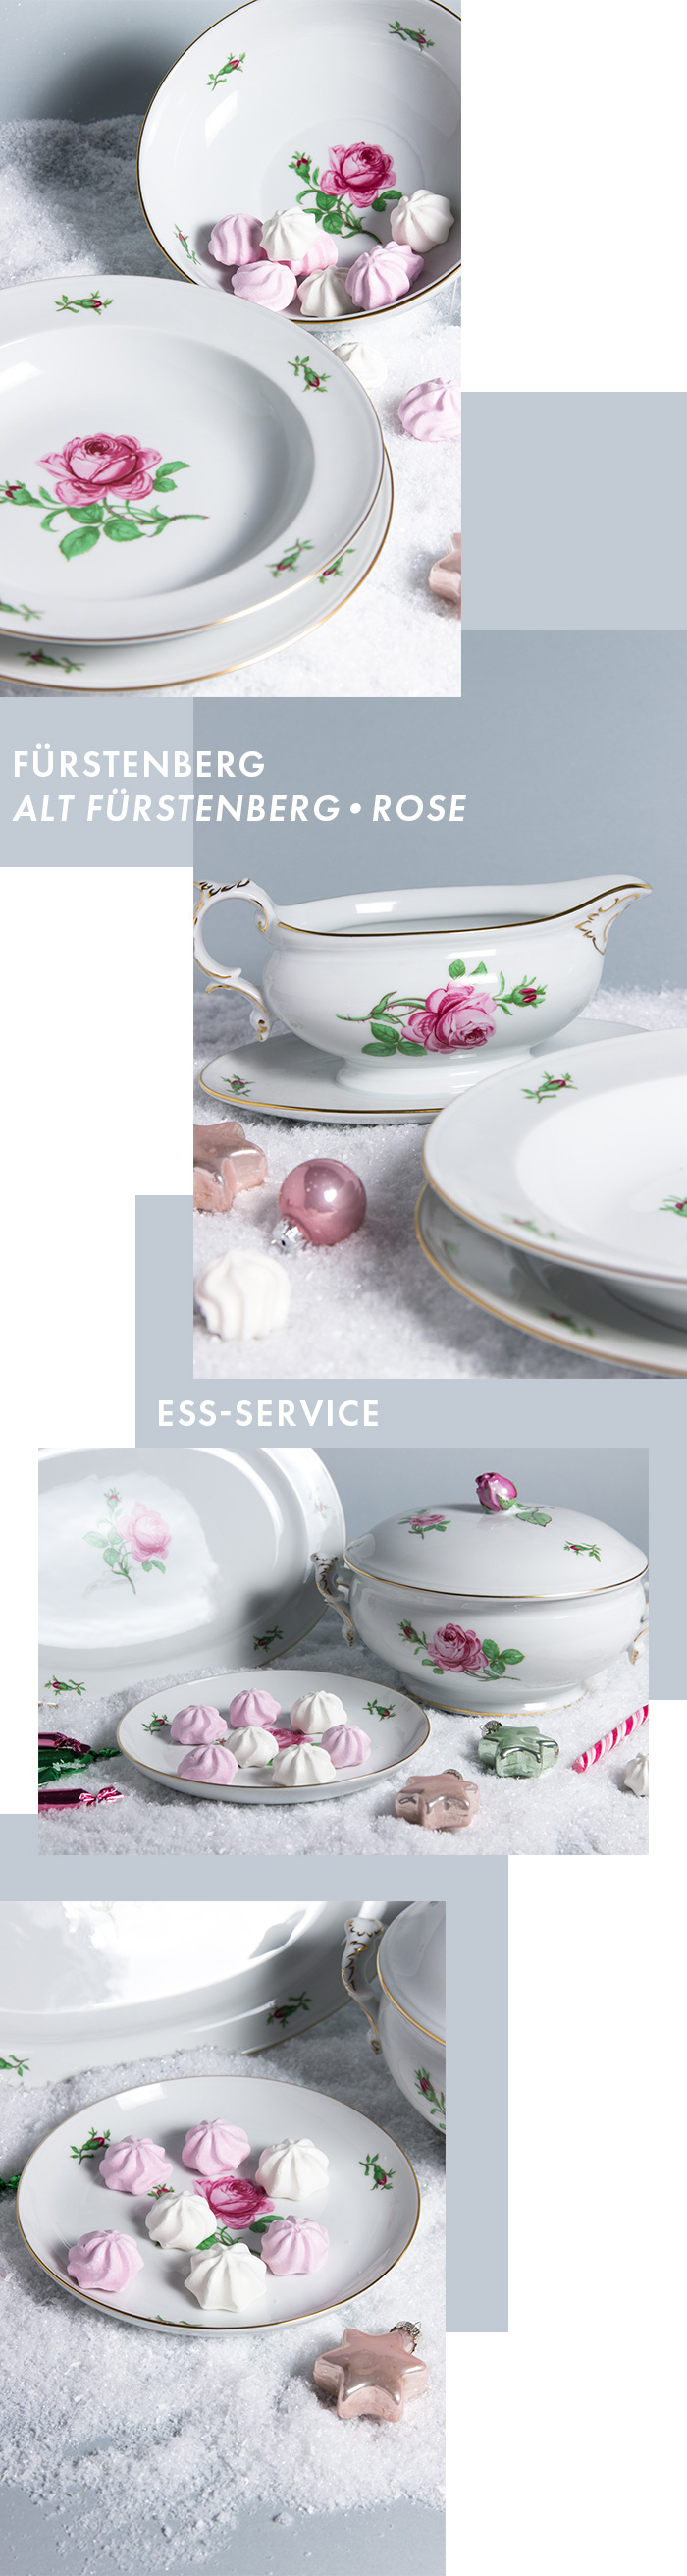 Exklusives Service - Ess-Service - Alt Fürstenberg - Rose